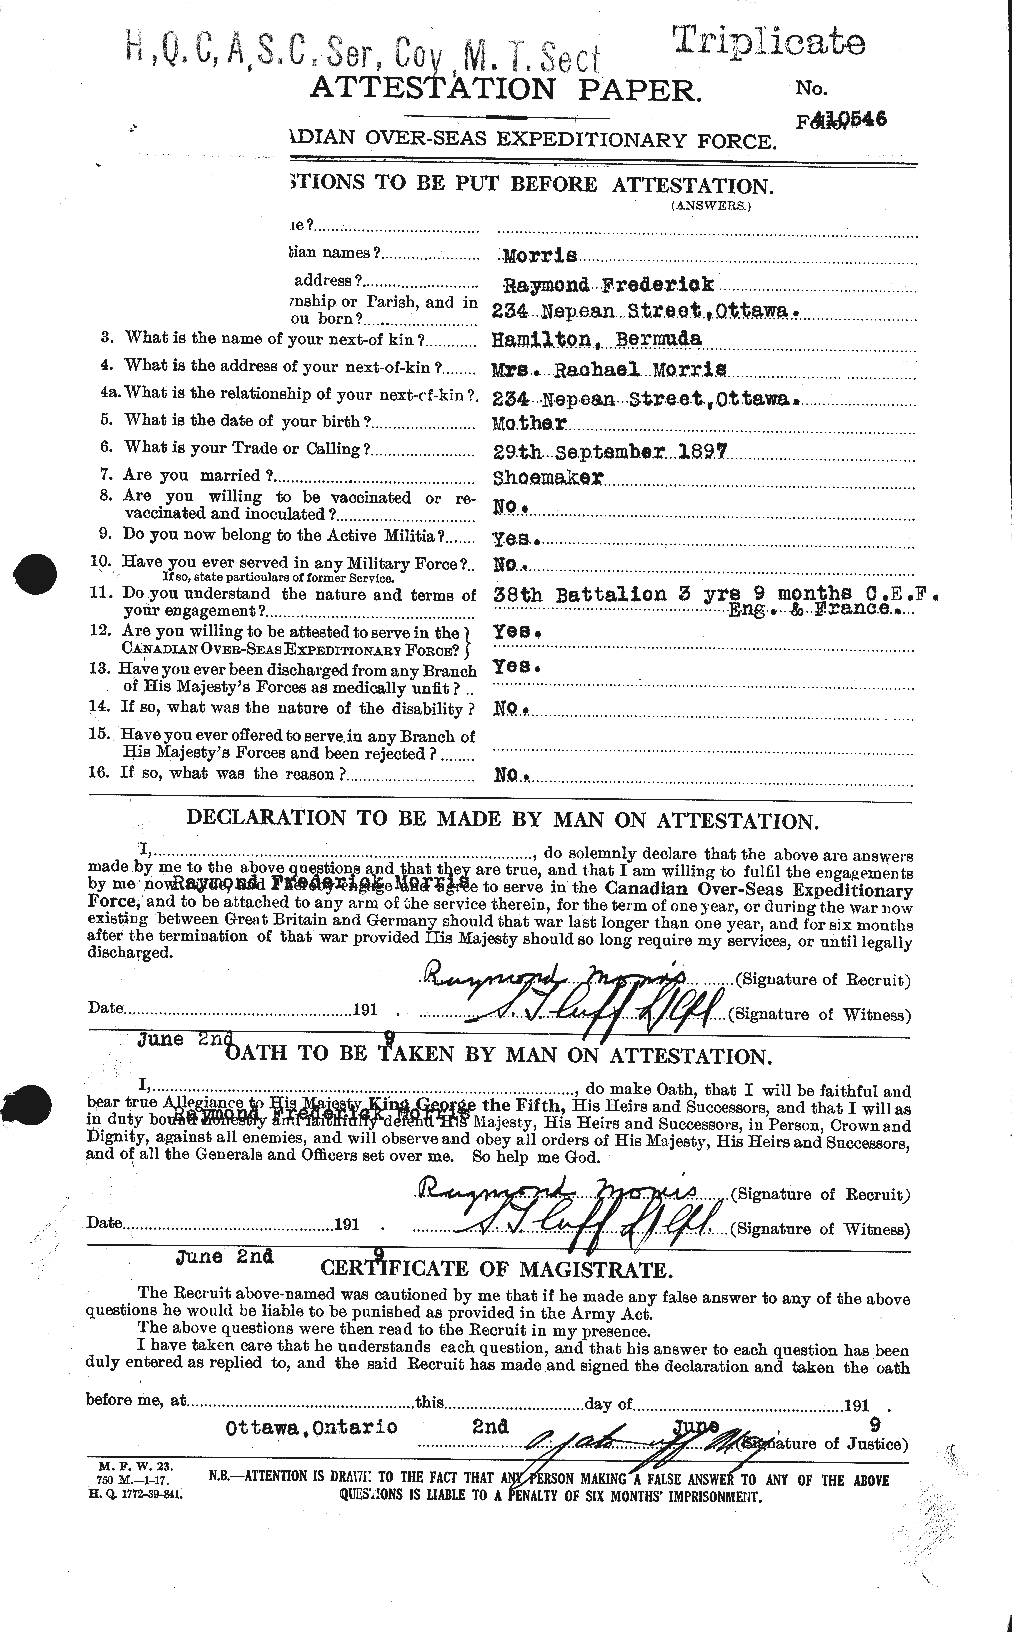 Dossiers du Personnel de la Première Guerre mondiale - CEC 508627a